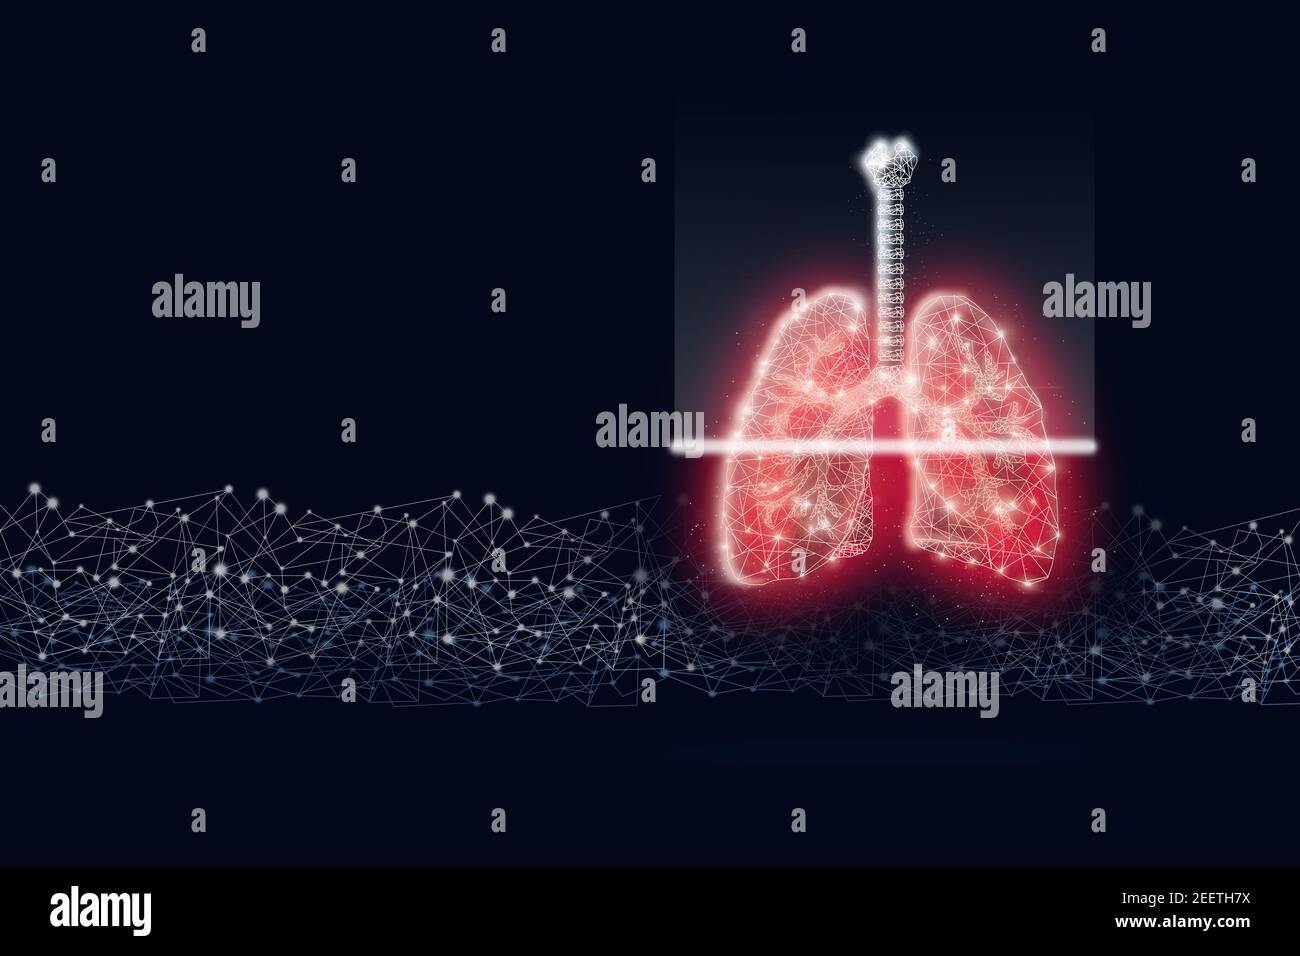 Covid-19. Scansione dei polmoni umani su sfondo blu scuro. Malattia di SARS, coronavirus nel polmone. Struttura a reticolo in polietilene a basso contenuto. Giornata mondiale della tubercolosi Foto Stock